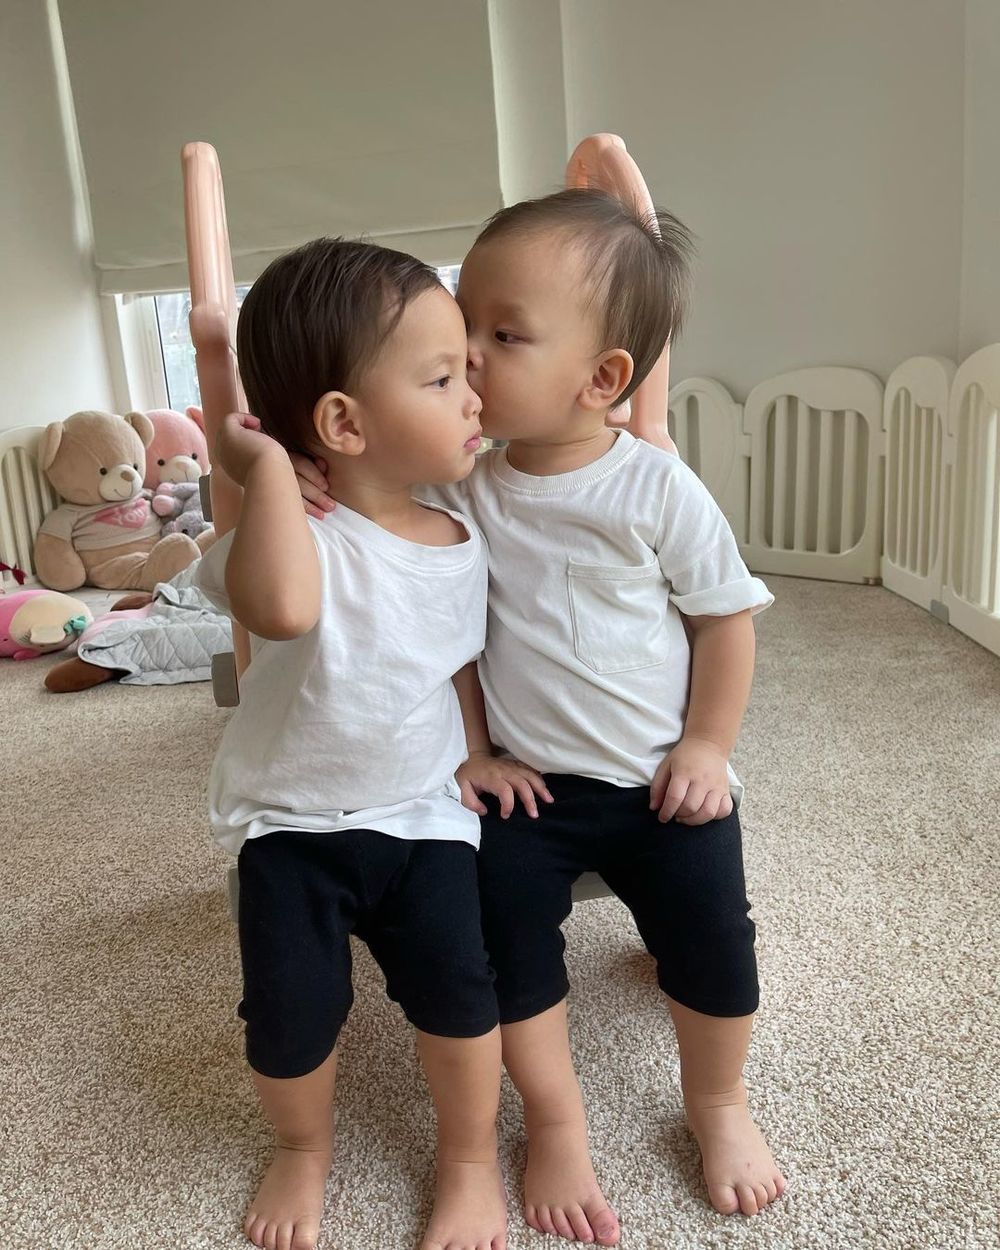 
Hai bé chăm sóc lẫn nhau khiến ai nấy đều yêu mến, ngưỡng mộ cách dạy con của Hồ Ngọc Hà. (Ảnh: Instagram henrylisaleon) - Tin sao Viet - Tin tuc sao Viet - Scandal sao Viet - Tin tuc cua Sao - Tin cua Sao